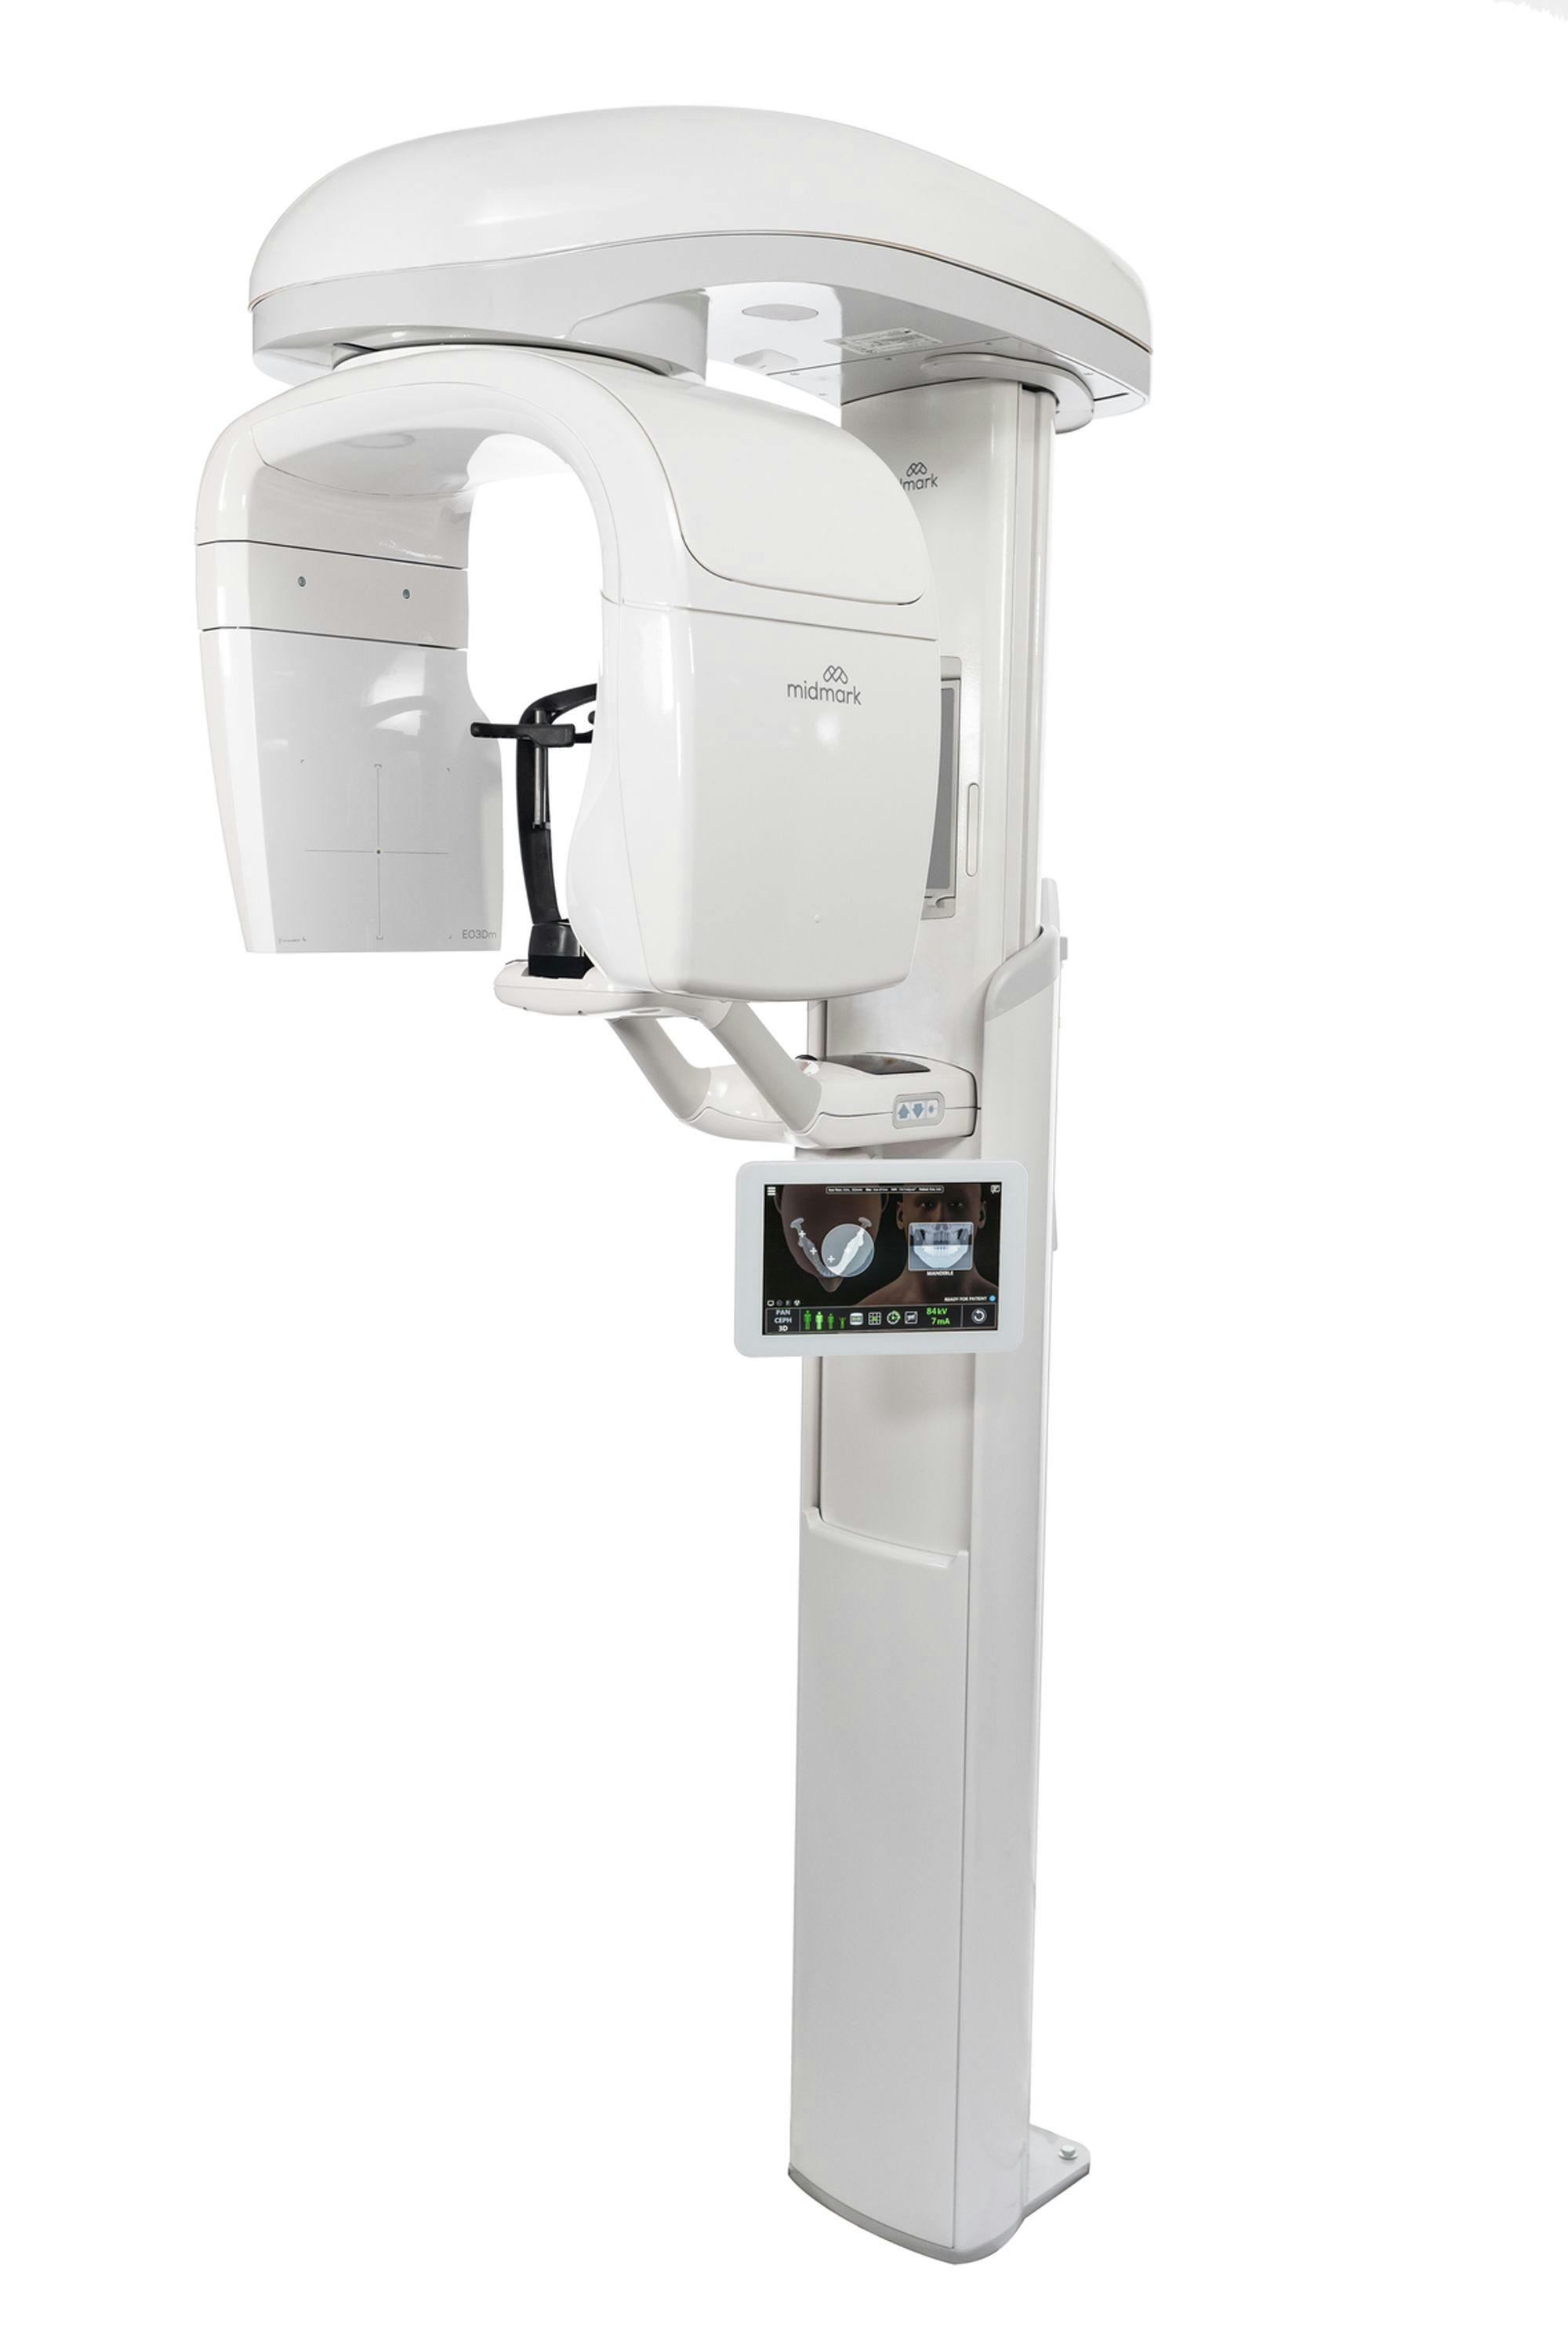 Midmark's new EOIS digital imaging system.